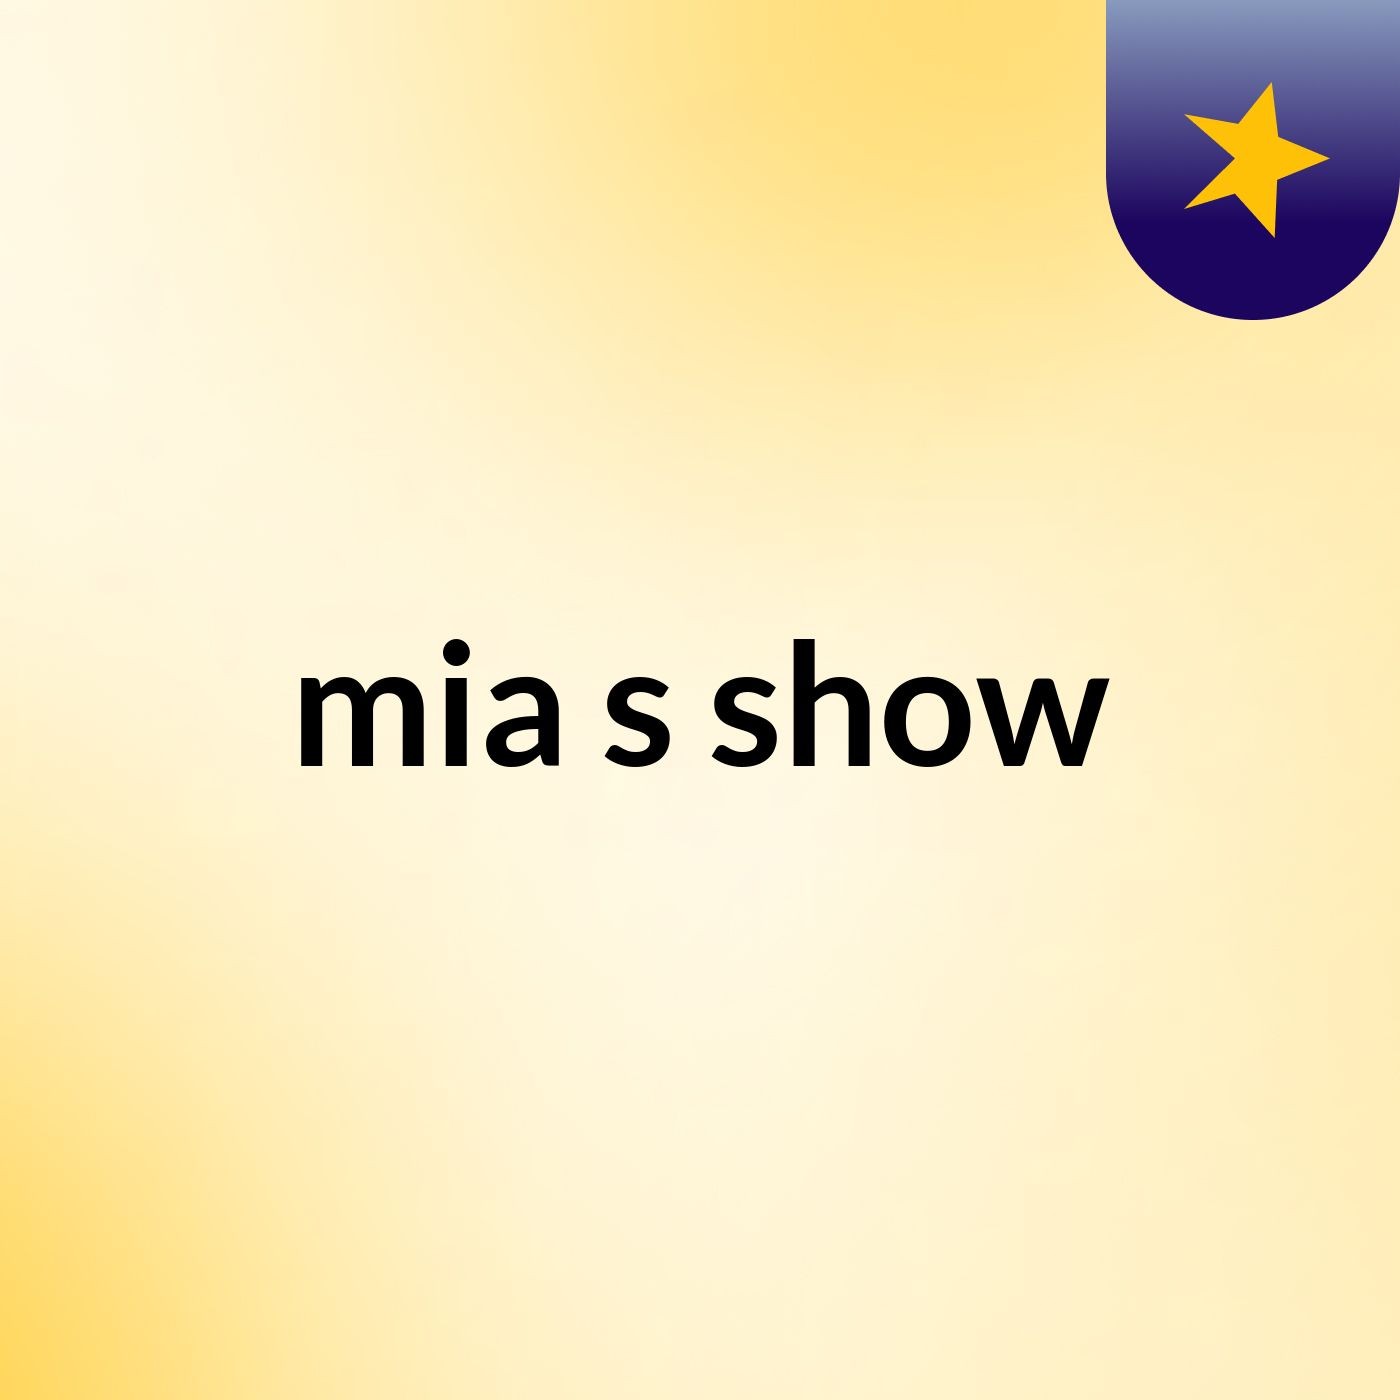 mia's show